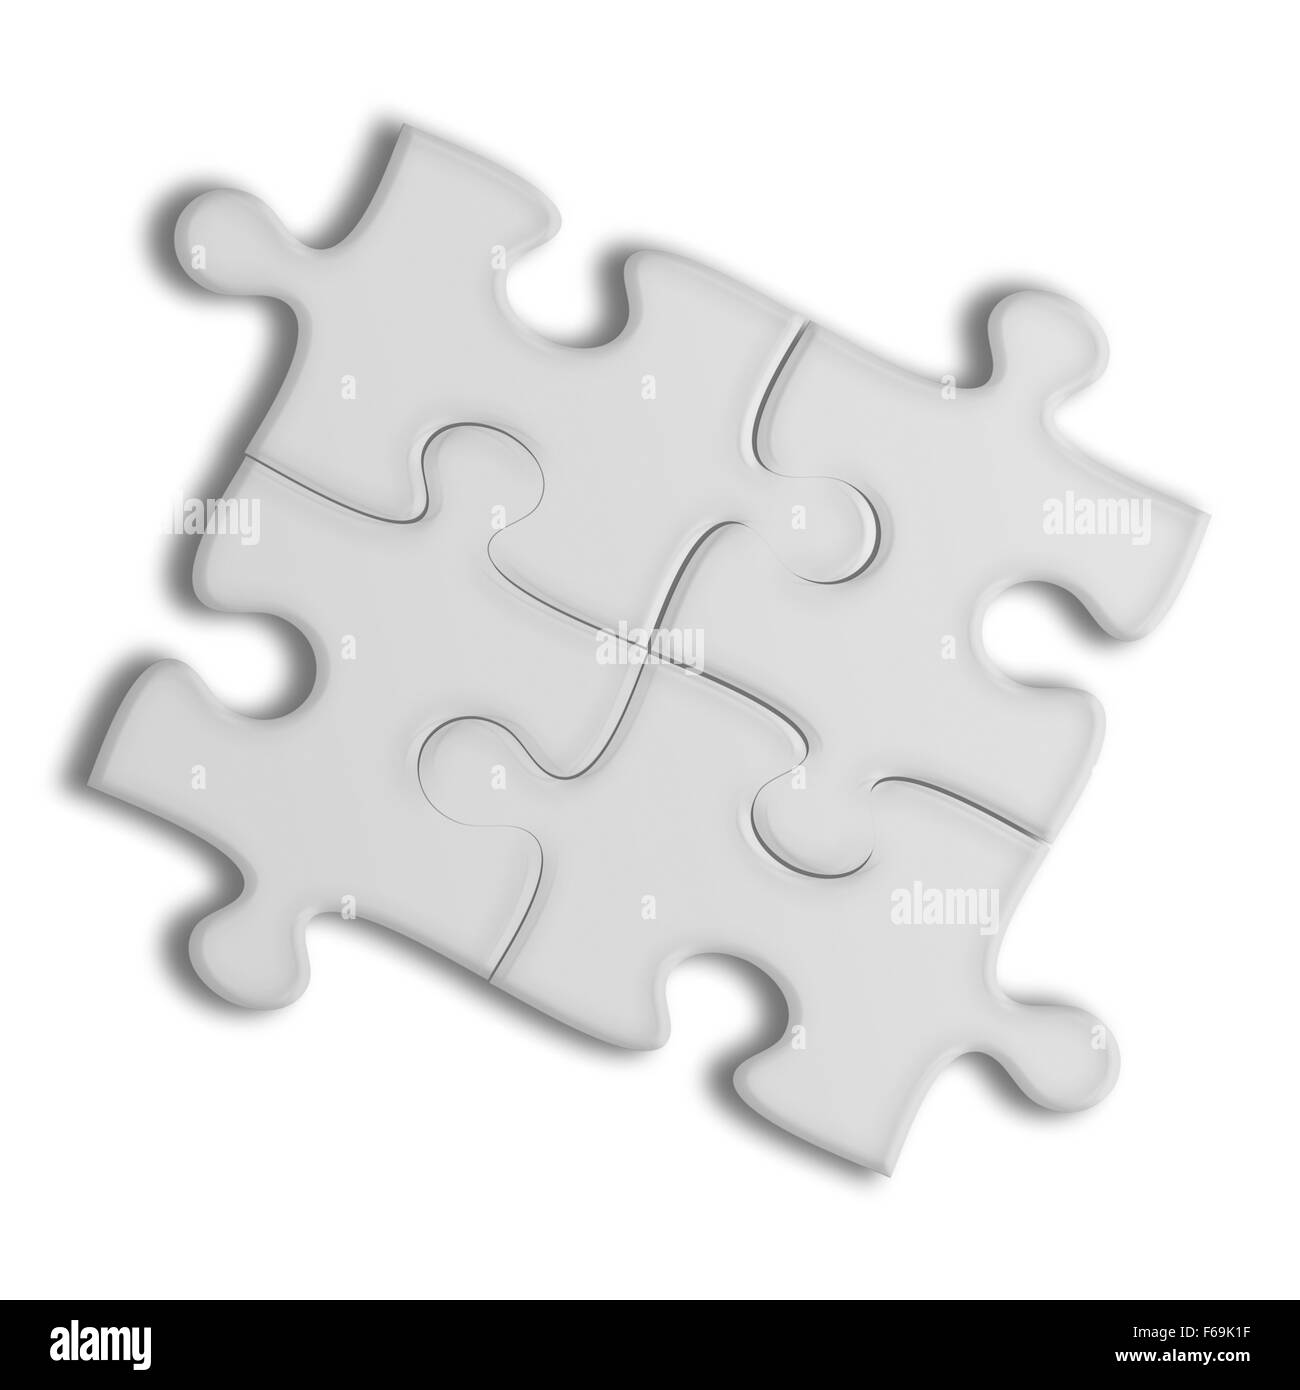 Nahaufnahme der Puzzle-Teile isoliert auf weißem Hintergrund. Team-Business-Konzept. Sehr detaillierte Darstellung. Stockfoto